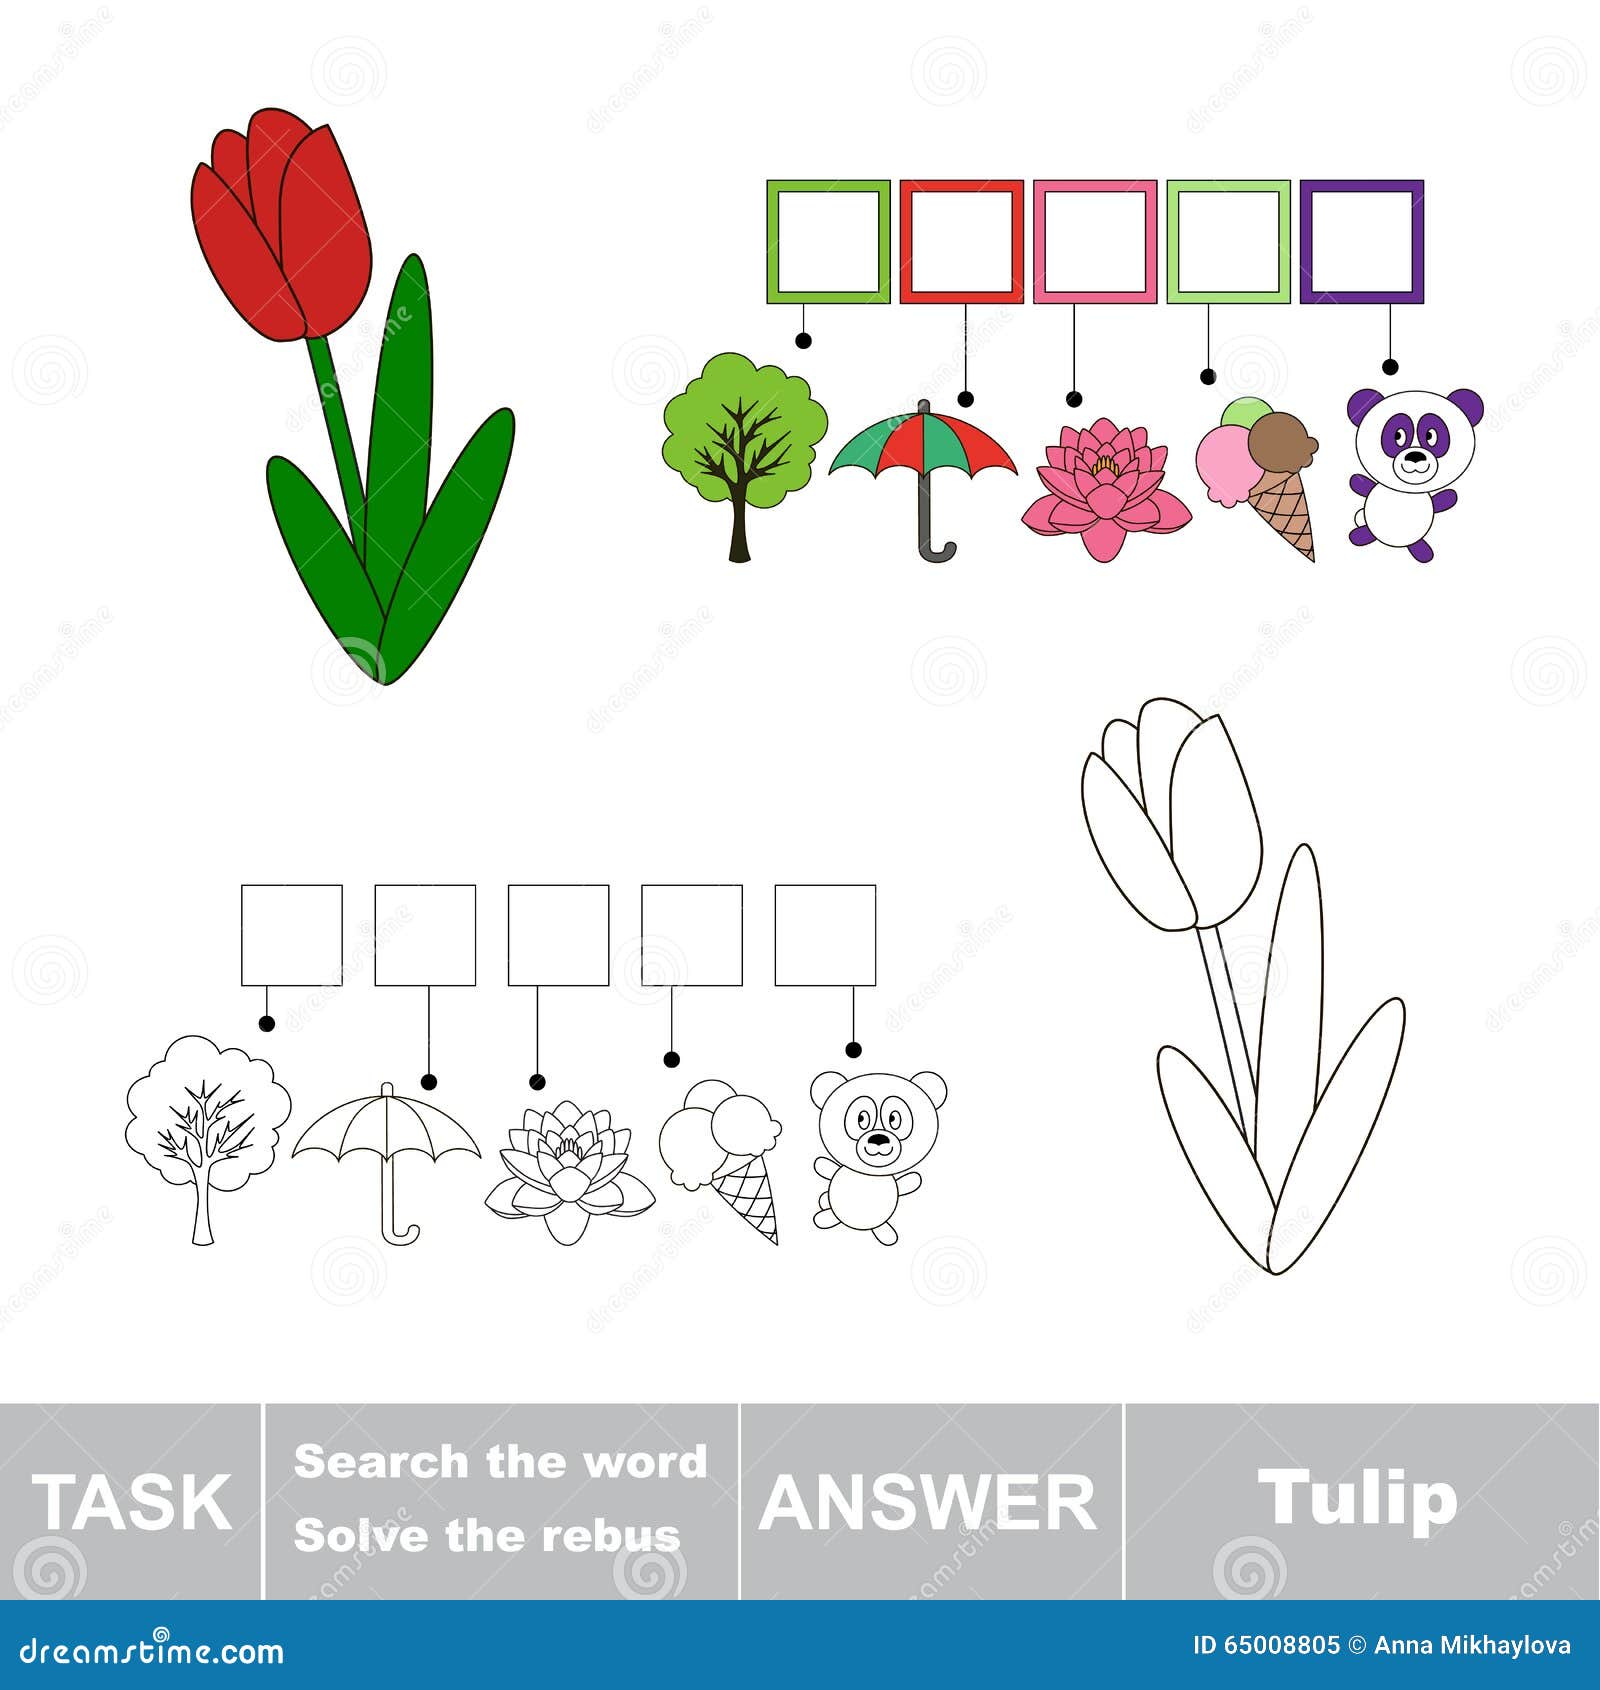 Анализ слова тюльпан